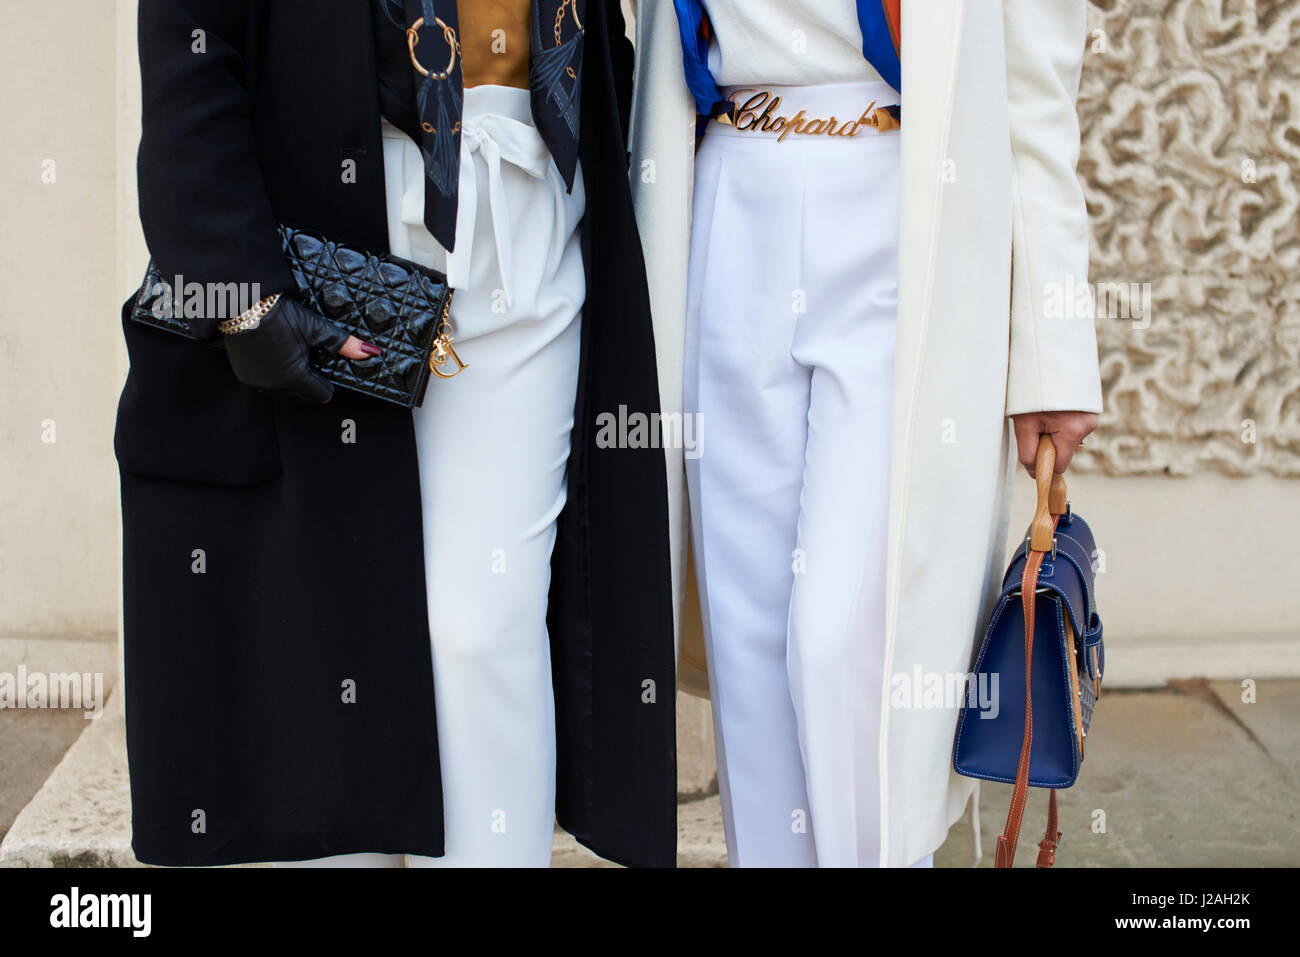 Londres - Febrero, 2017: Bajar la sección intermedia de dos mujeres en la calle la celebración de bolsos, Chanel bolso de cuero en la izquierda, mientras que la mujer de la derecha lleva un Chopard Correa, durante la Semana de la Moda de Londres, horizontal, vista frontal Foto de stock